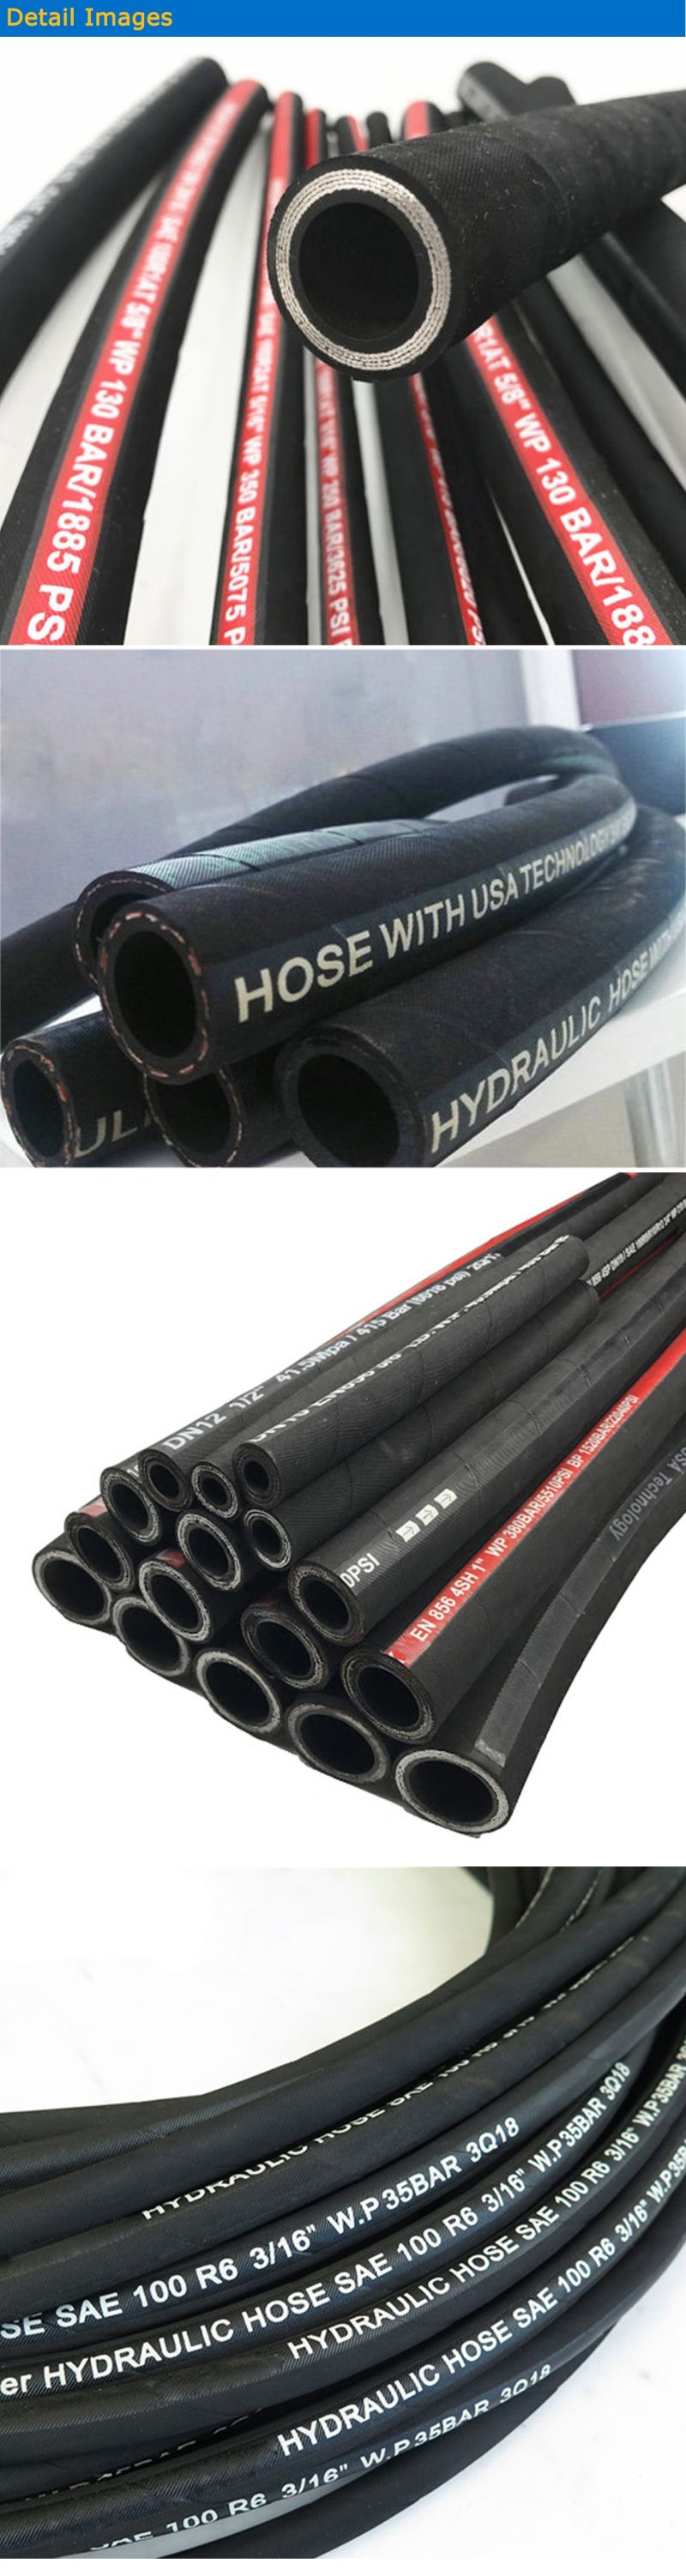 High Quality Hydraulic Hose Hydraulic Flexible Hose for Industry